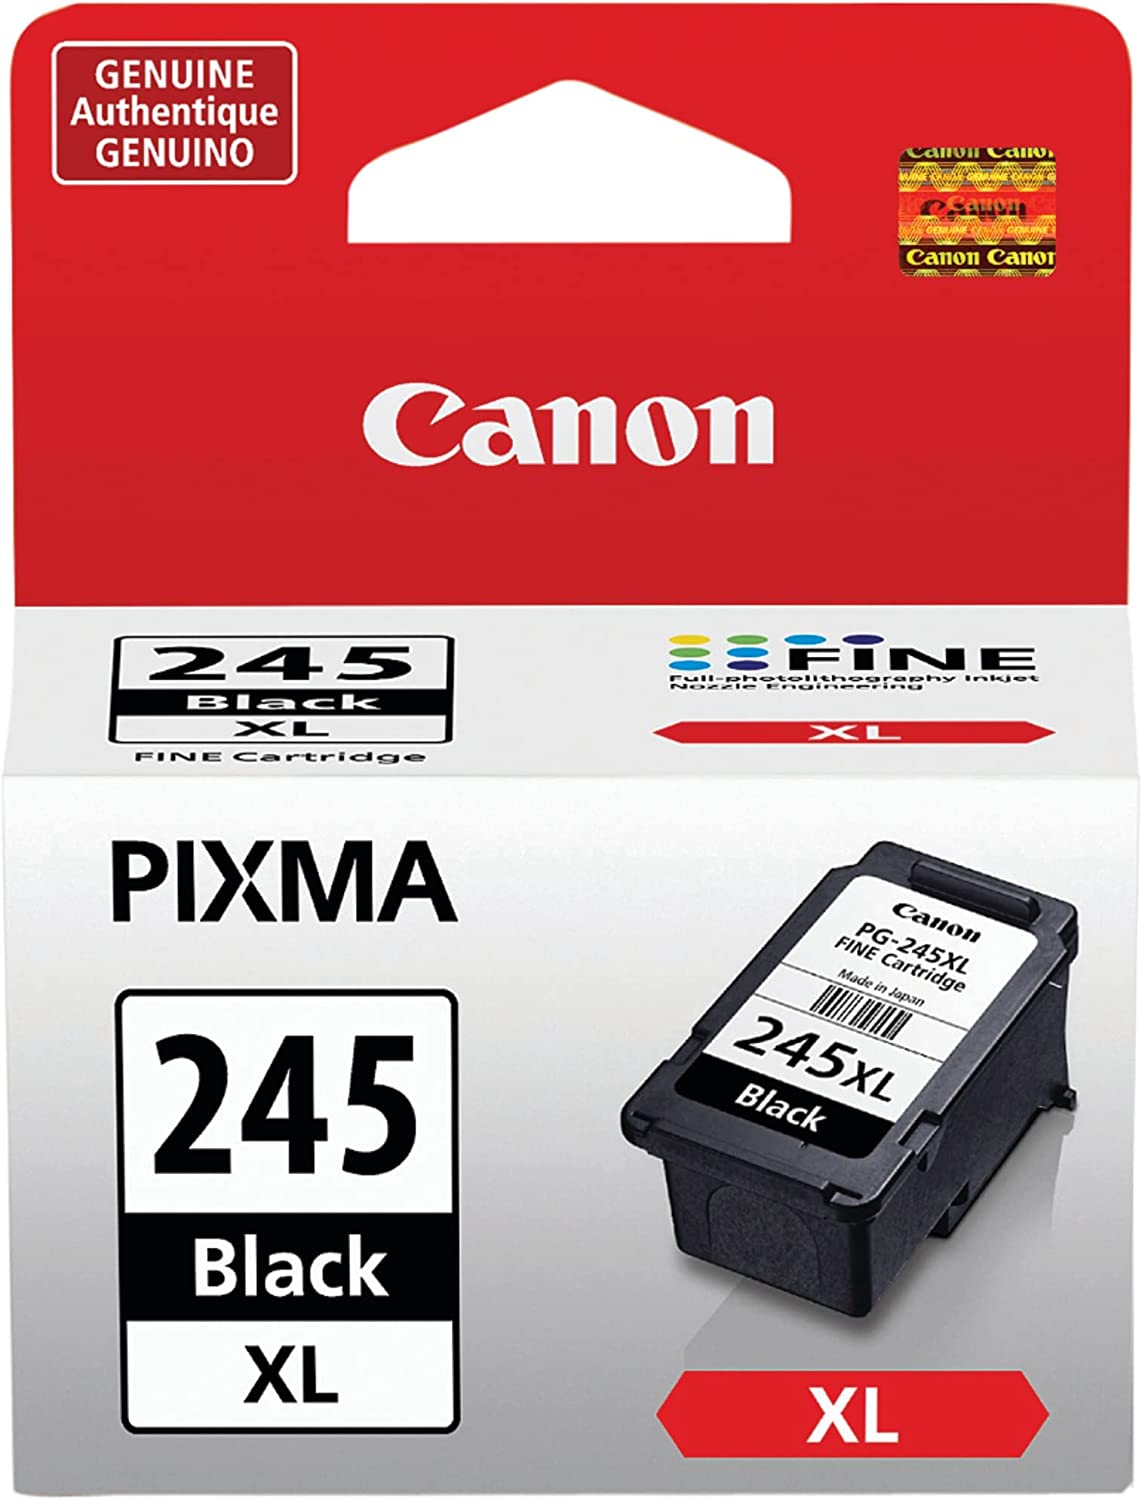 iP2820 MG2420 MG2924 MG2920 MX492 MG3020 MG2525 TS3120 TS302 TS202 TR4520과 호환되는 캐논 PG-245 XL 블랙 프린터 잉크 카트리지